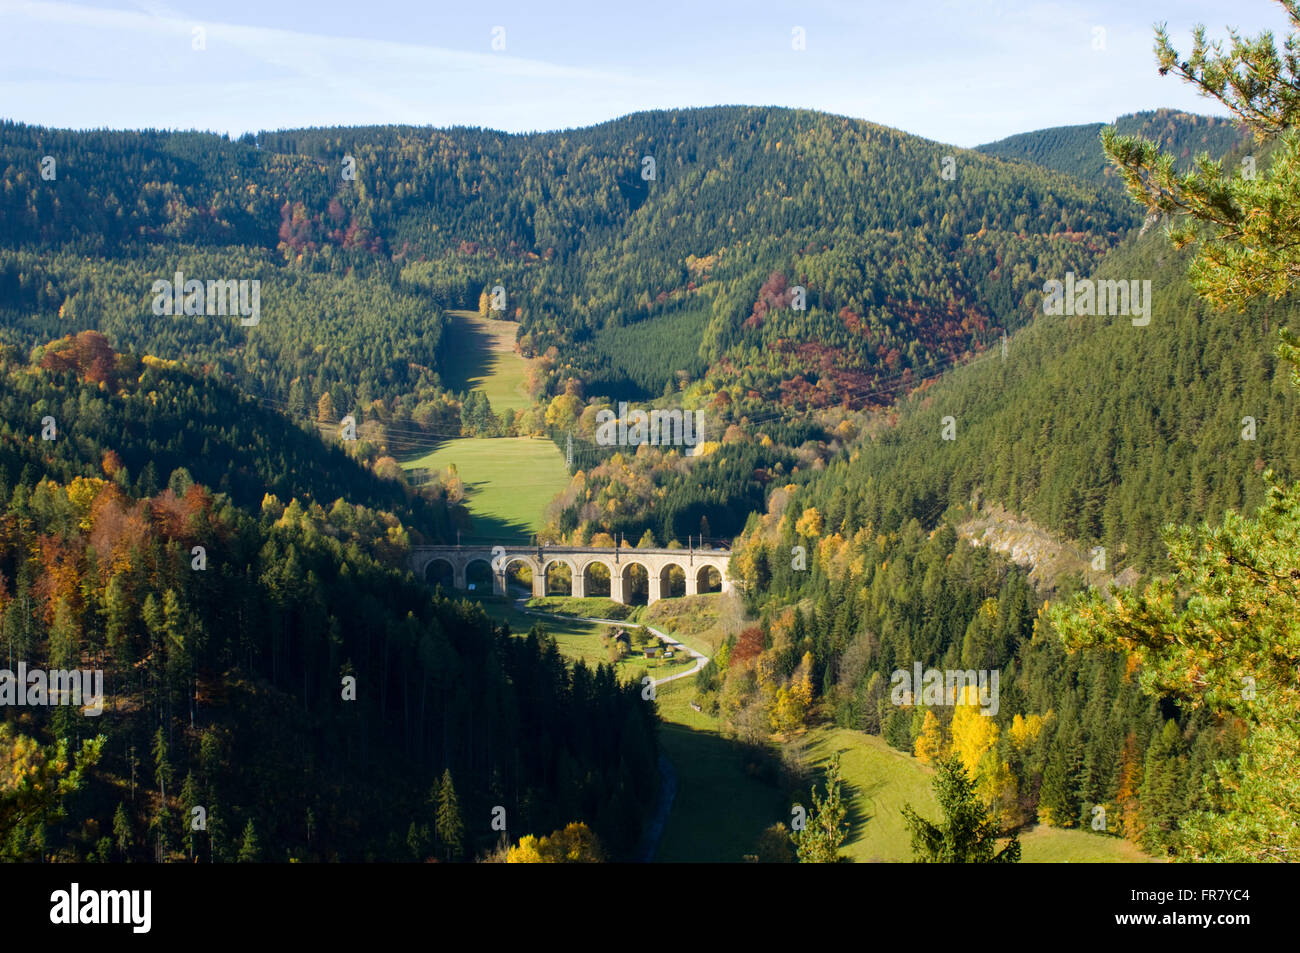 Österreich, Luftkurort Semmering, Blick auf eine Brücke der Semmerimgbahn. Sie war die erste normalspurige Gebirgsbahn Europas, Foto de stock